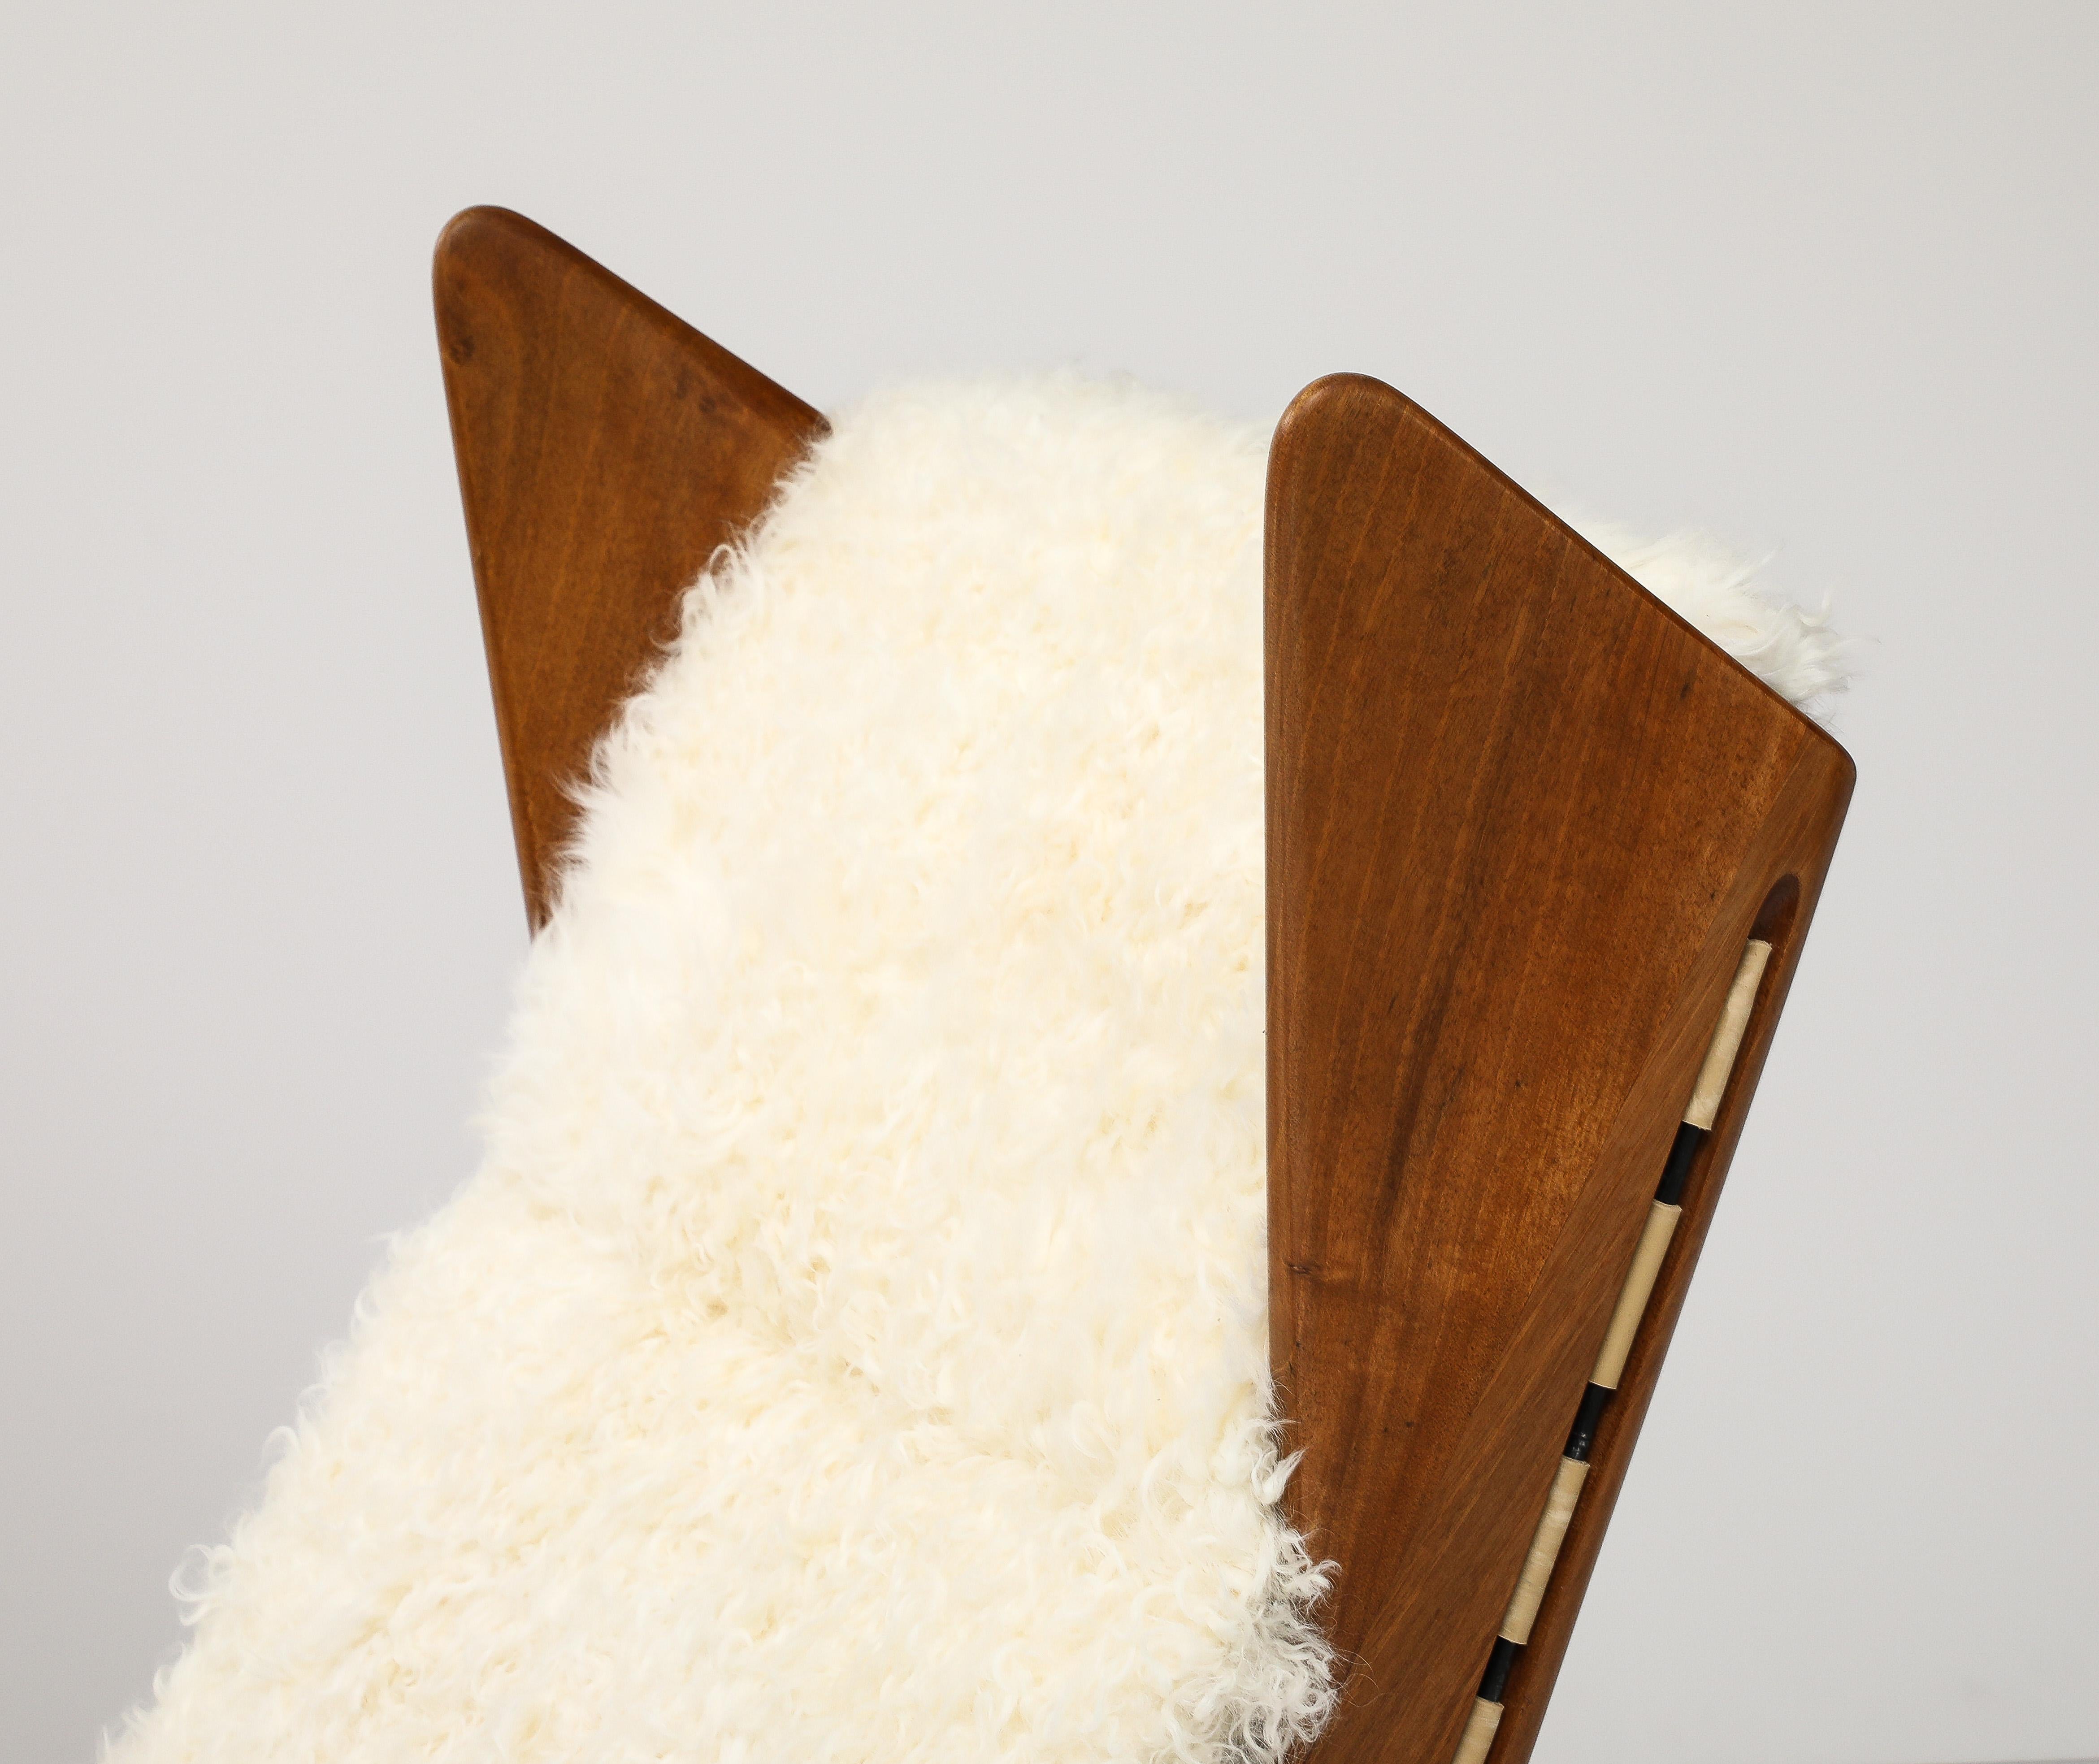 Conçus par le Studio Tecnico de Cassina et fabriqués par Figli di Amedeo Cassina, sculpturaux fauteuils de salon à bascule en noyer modèle 572 avec coussins cannelés en peau d'agneau Kalgan ivoire sur sangle, Italie, 1955.  Ces exquises chaises à